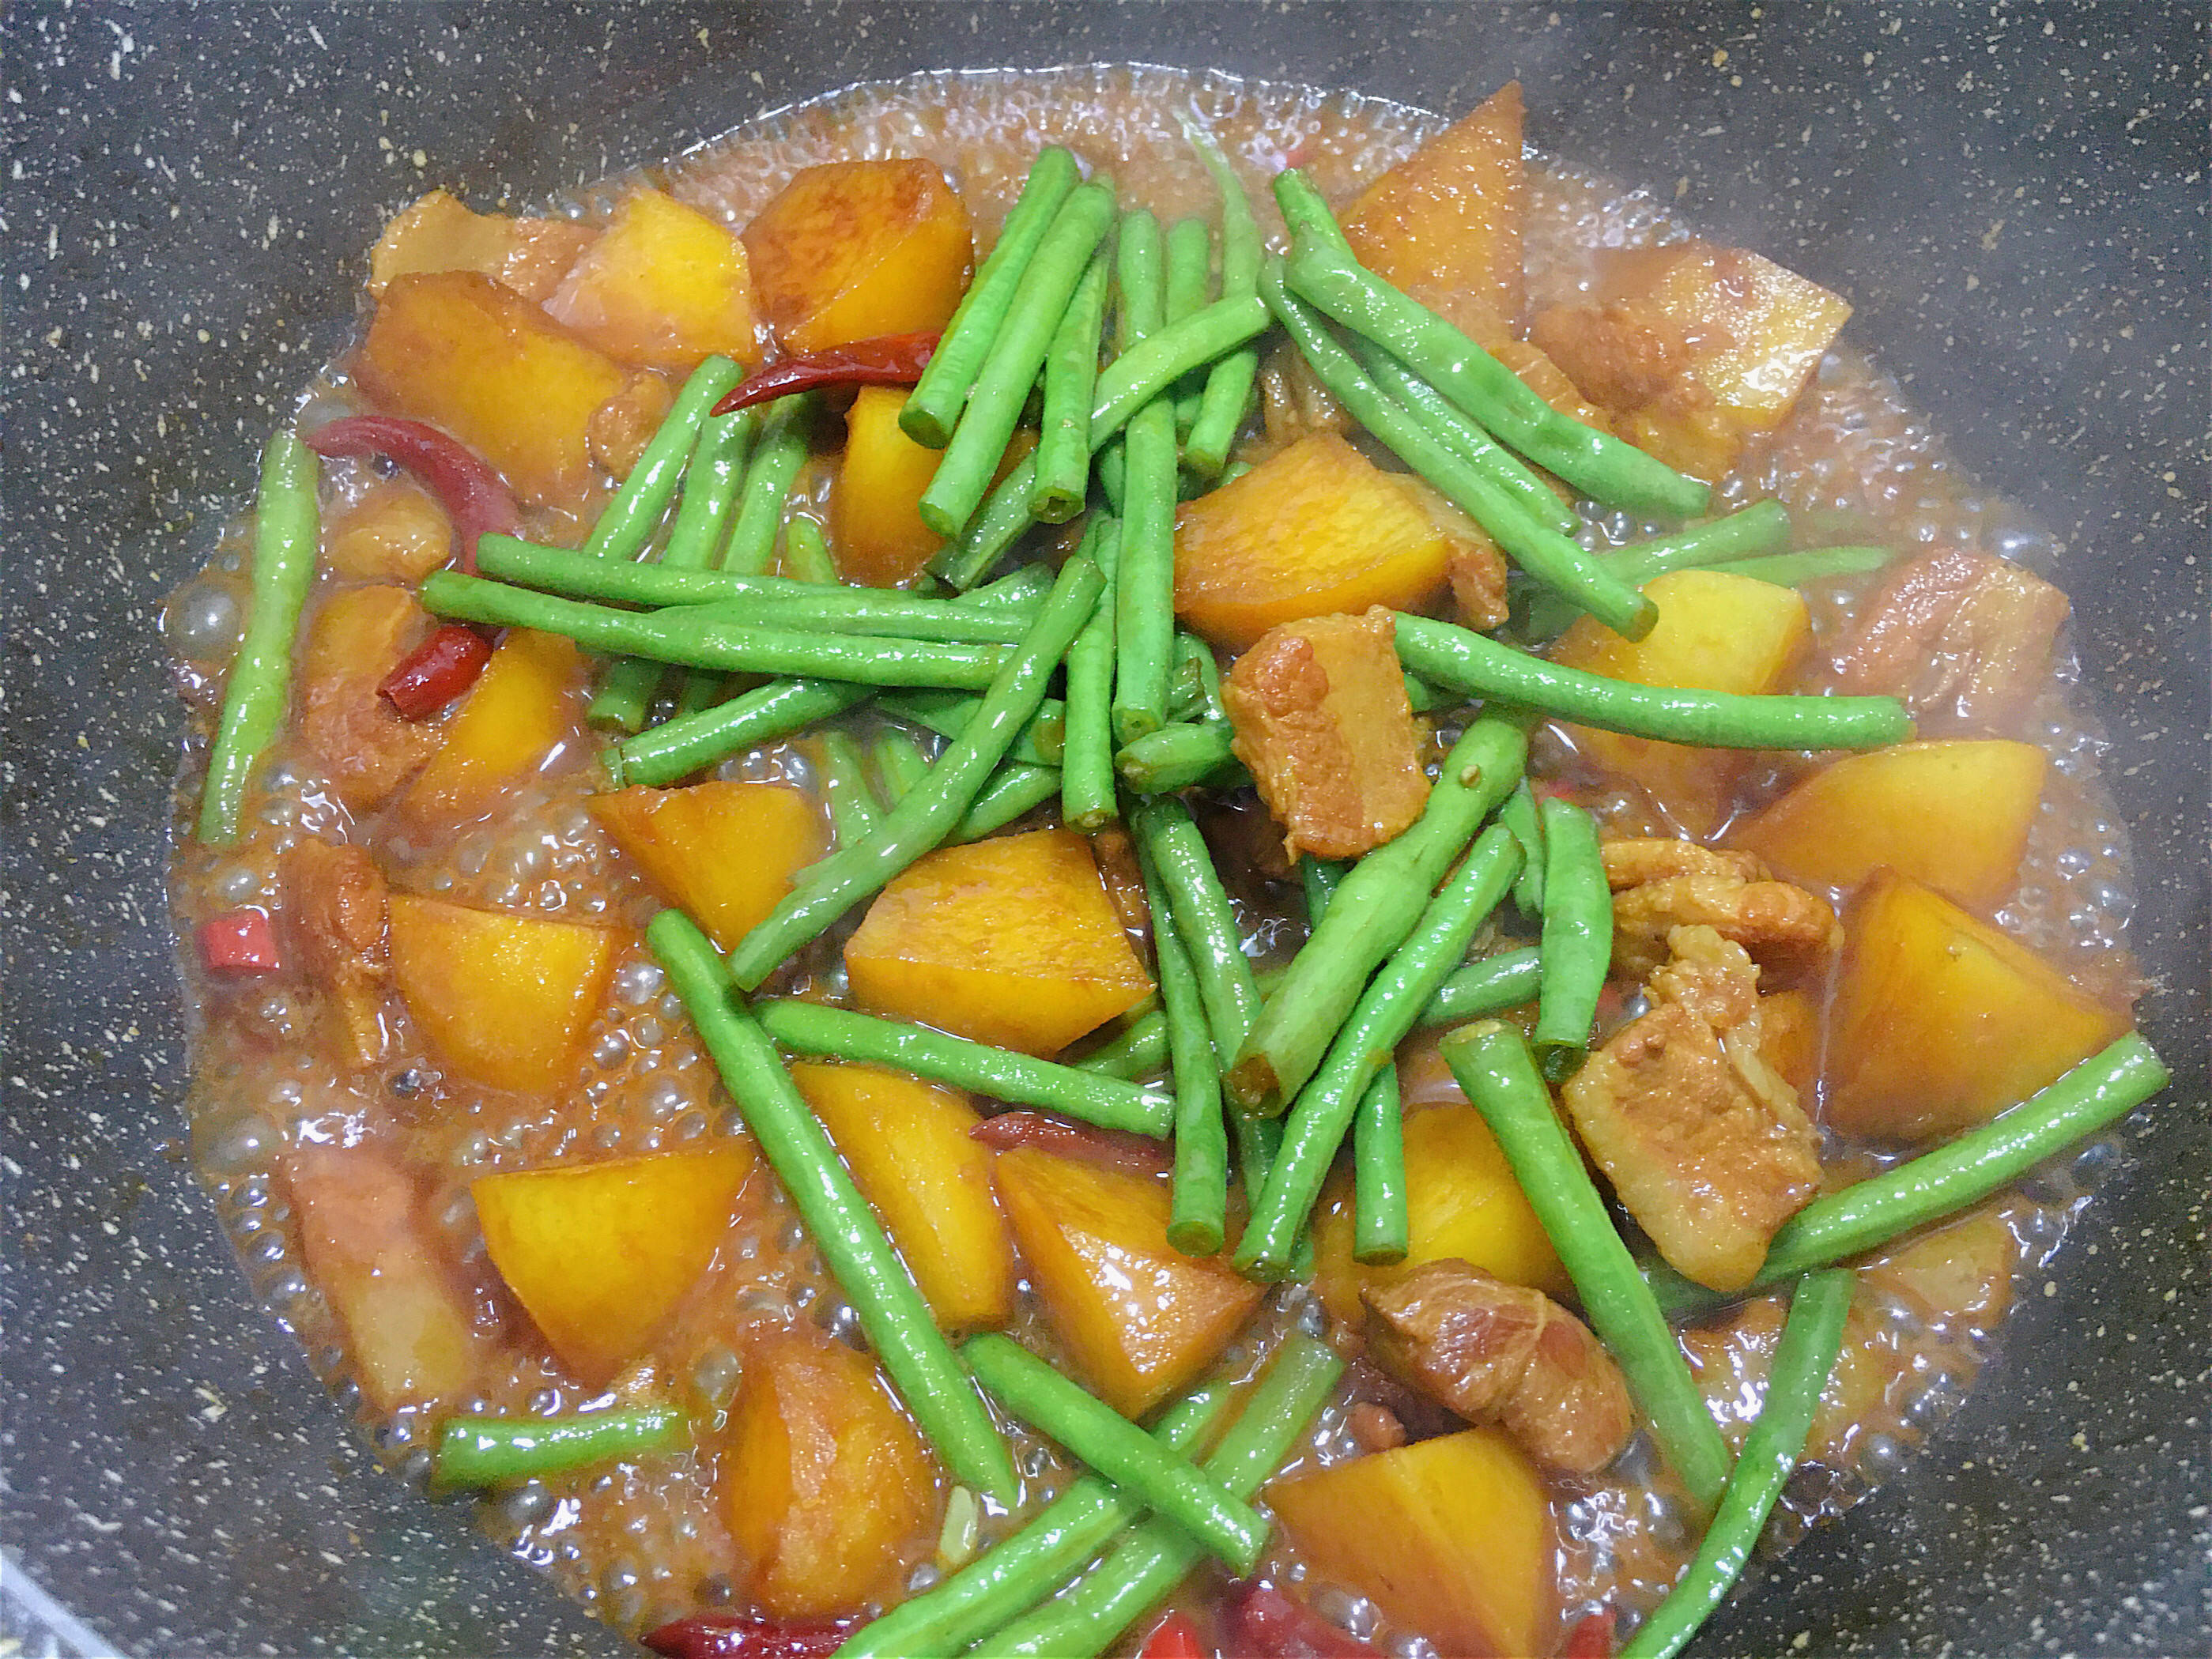 农家土豆豆角炖肉,做法简单,味道鲜美